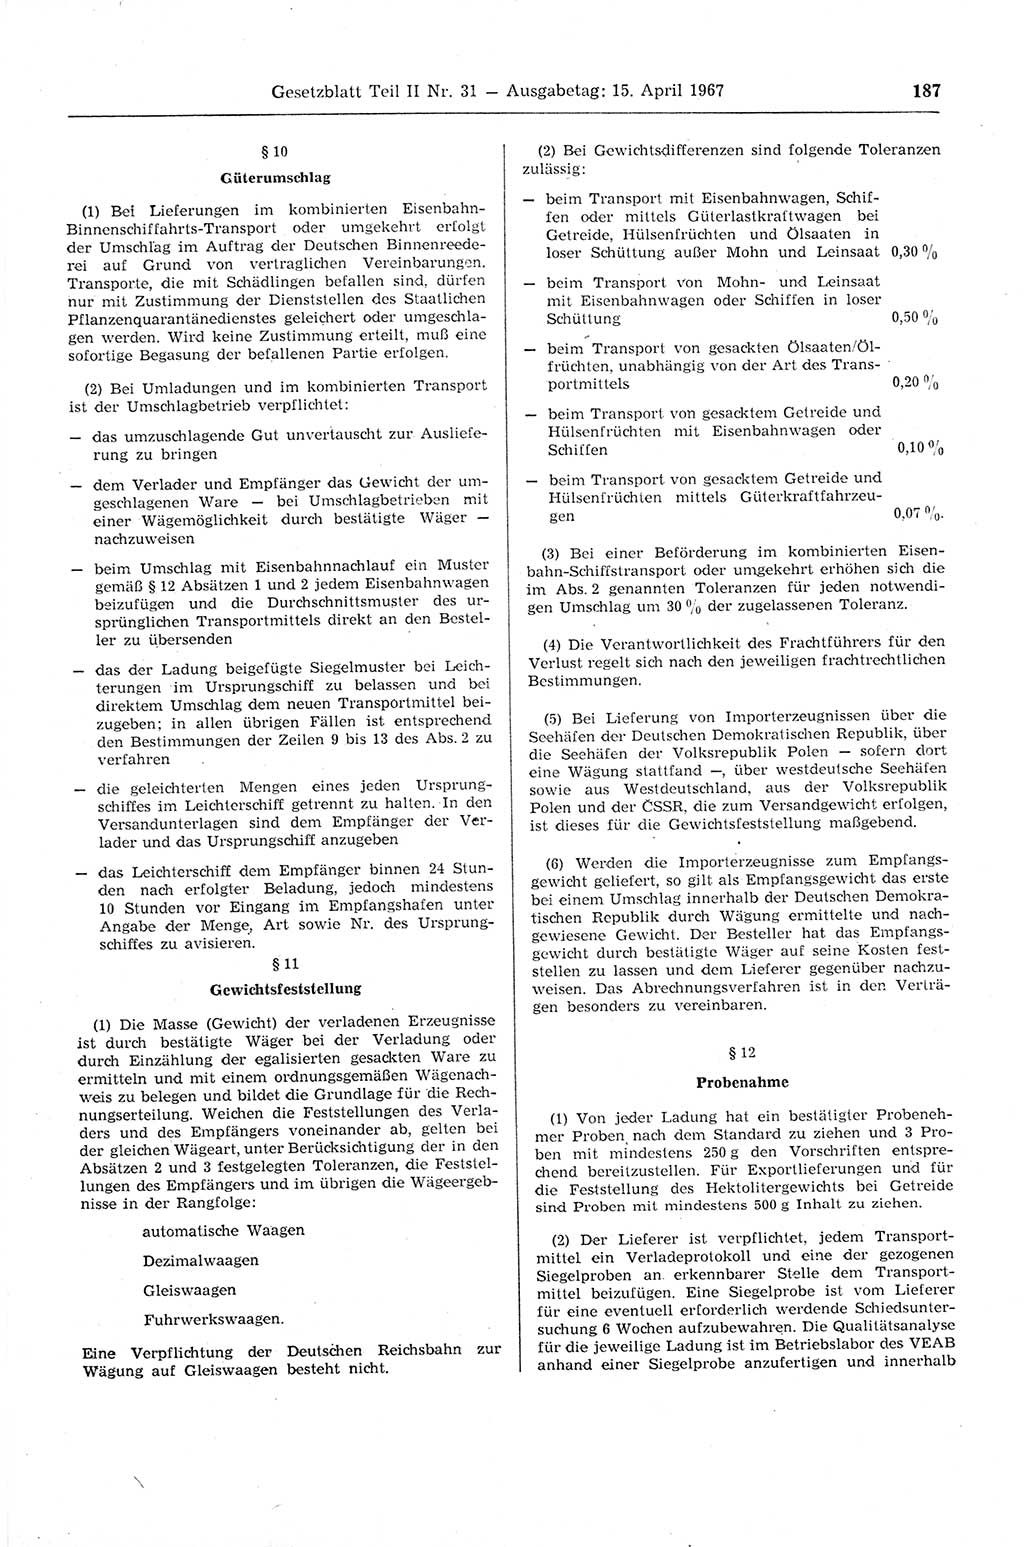 Gesetzblatt (GBl.) der Deutschen Demokratischen Republik (DDR) Teil ⅠⅠ 1967, Seite 187 (GBl. DDR ⅠⅠ 1967, S. 187)